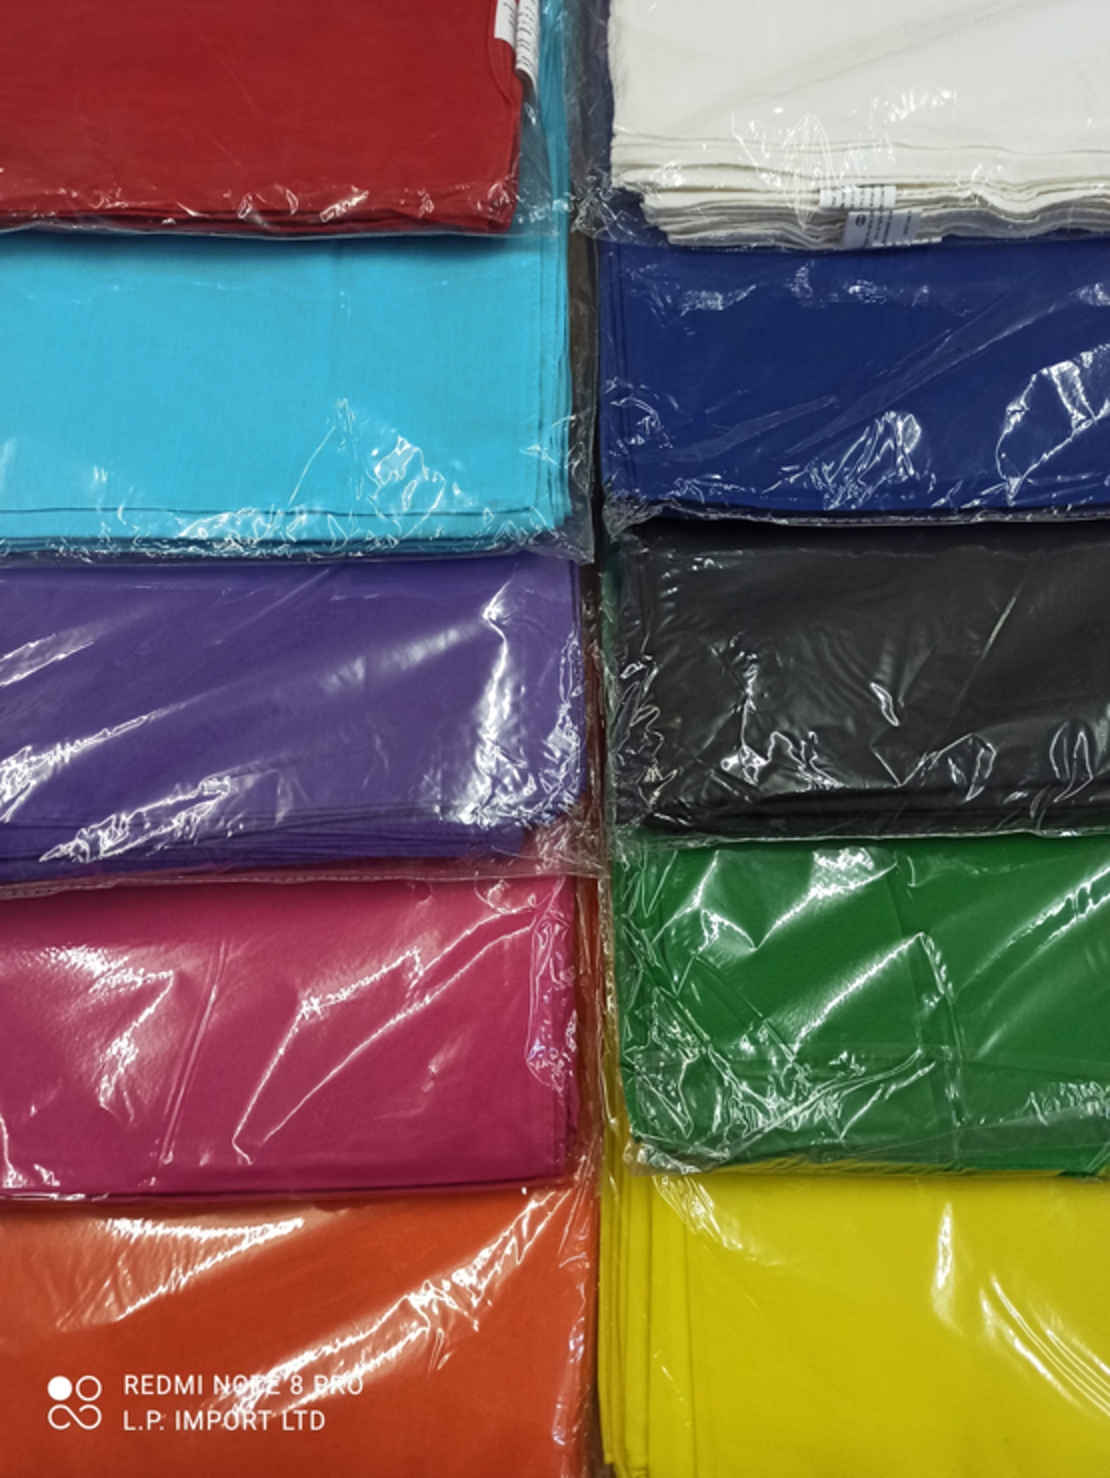 בנדנה חלקה צבע אחיד 12 יחידות מאותו הצבע באריזה אחת ניתן לבחור חבילות מצבע שונות או זהות סיטונאות.